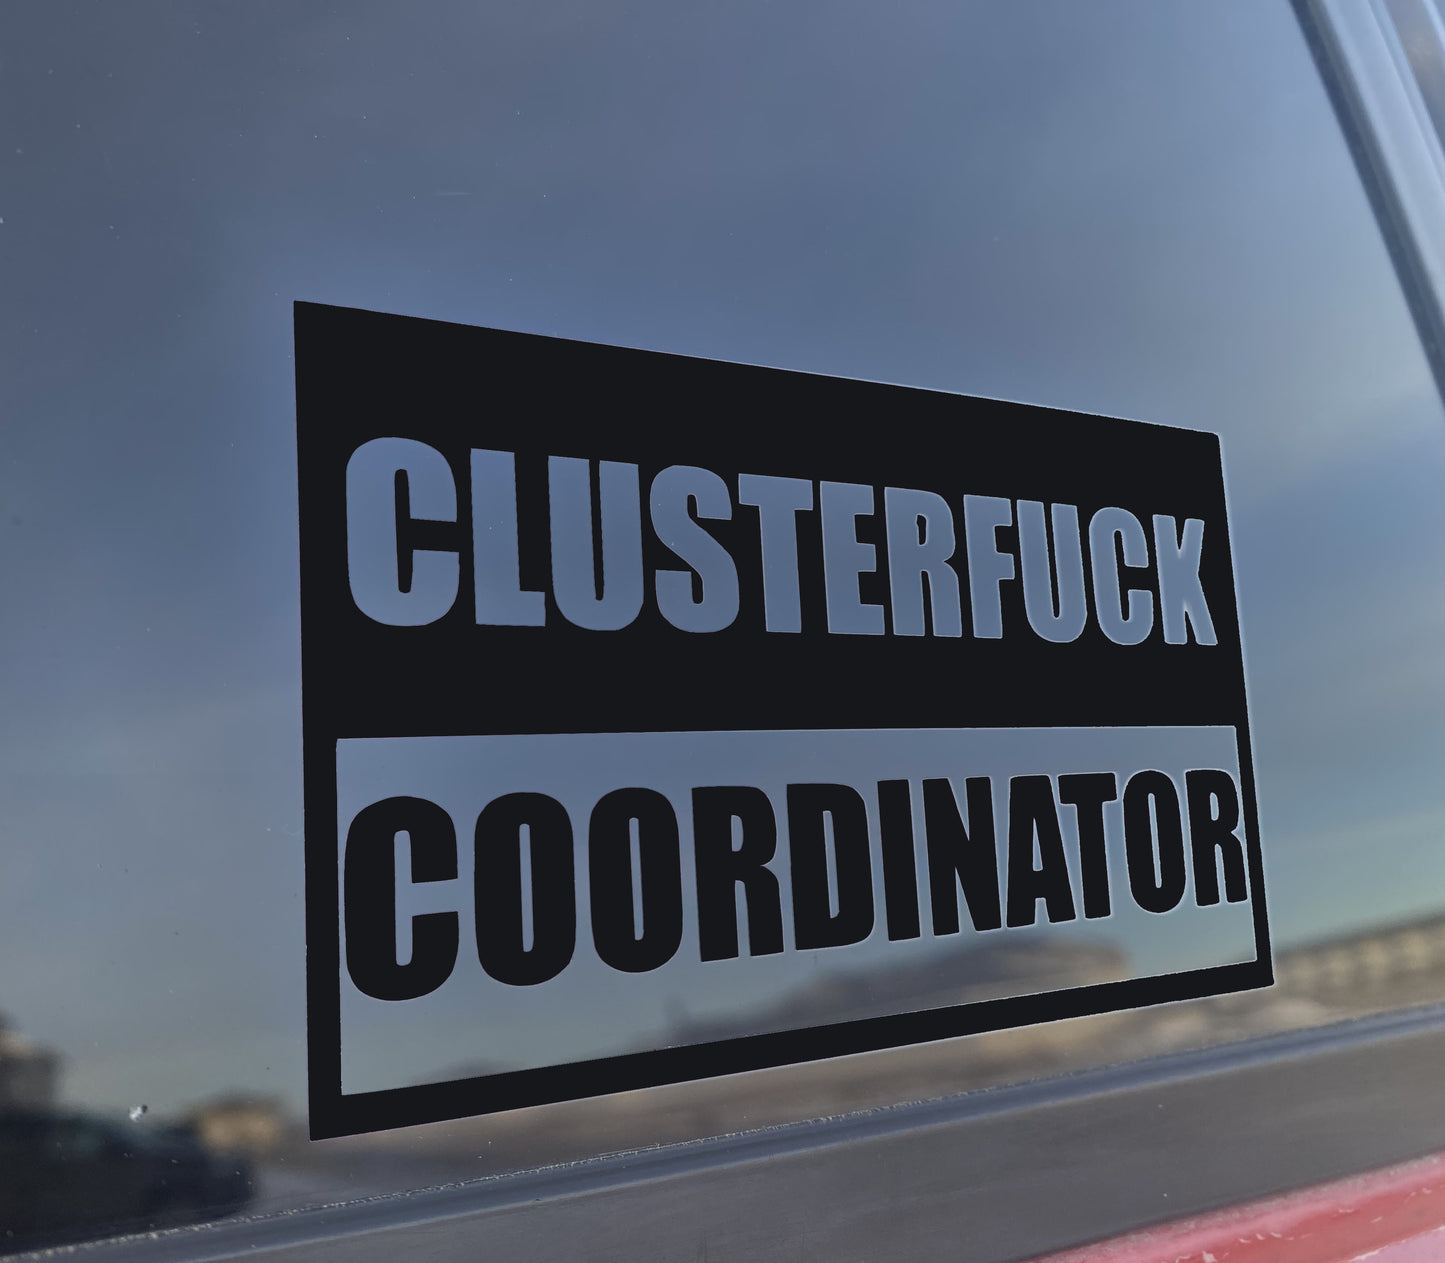 Clusterf*ck Coordinator vinyl decal